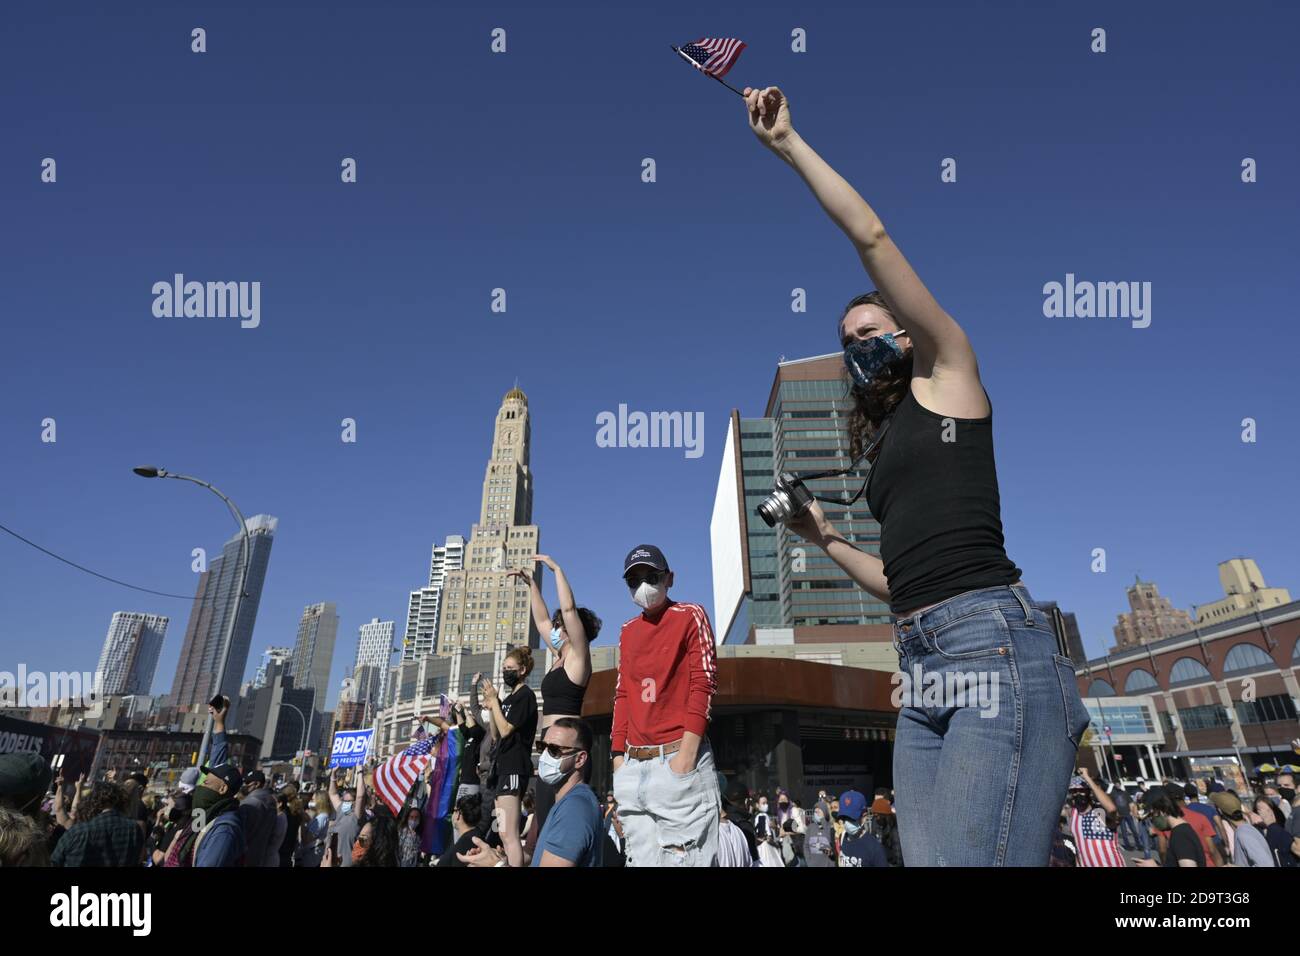 Brooklyn, New York, États-Unis 7 novembre 2020. Une jeune femme debout sur un pylône fait passer un drapeau américain tandis que les gens se rassemblent à l'extérieur du Barclays Center pour célébrer la victoire projetée de Joe Biden dans la course présidentielle américaine Banque D'Images